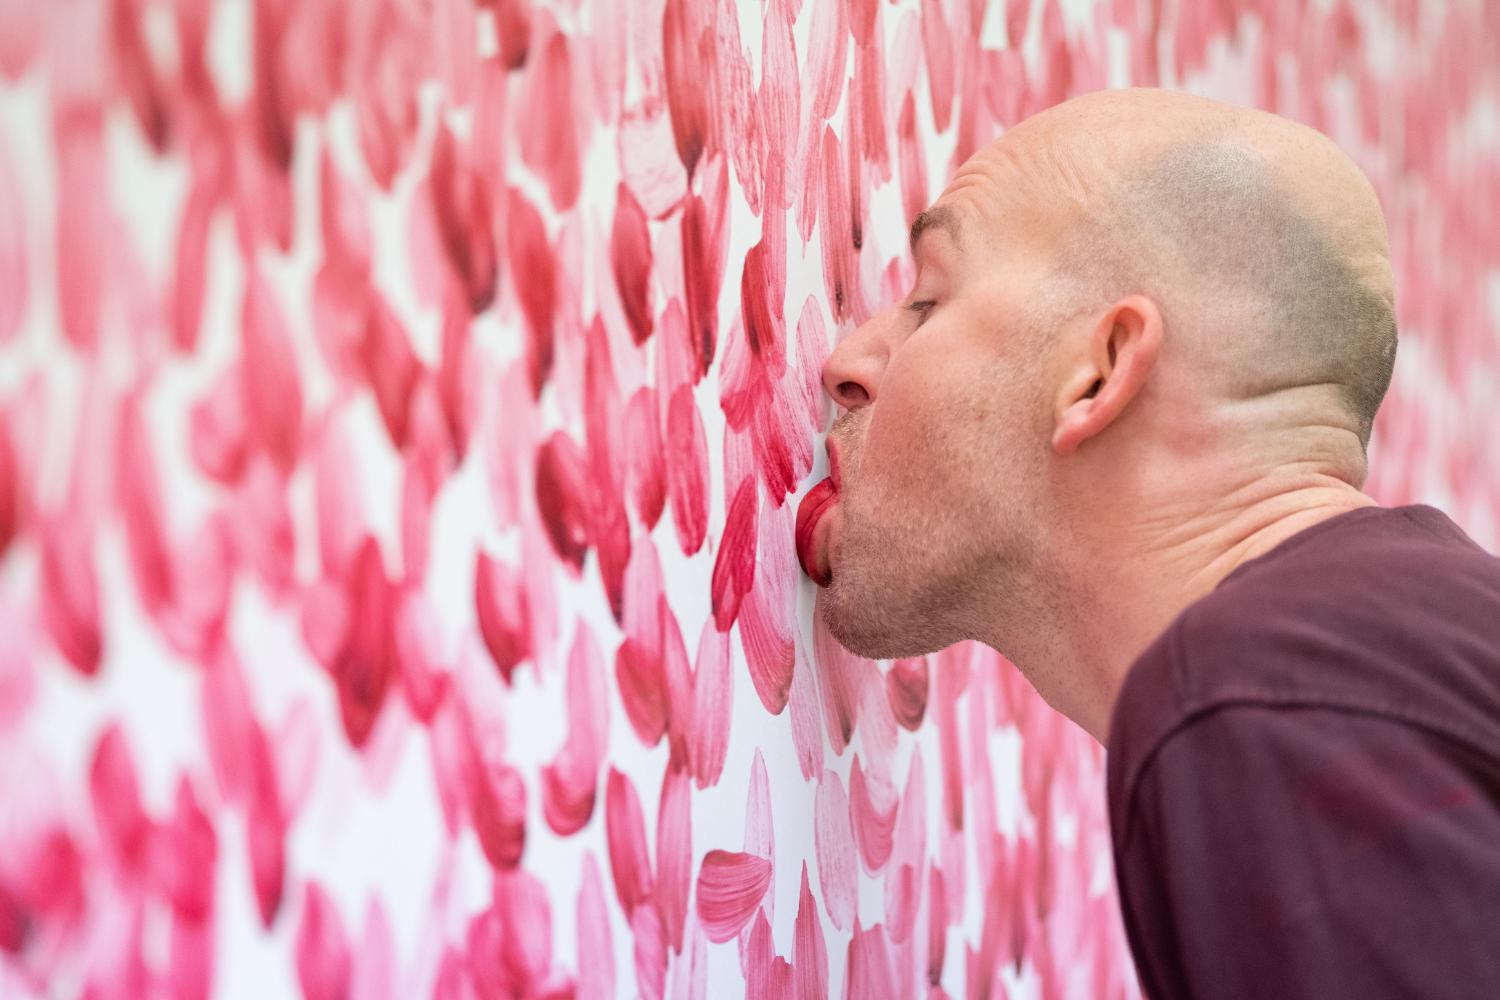 Benjamin Houlihan, Künstler, malt sein Bild im Kunstmuseum Wolfsburg mit der Zunge